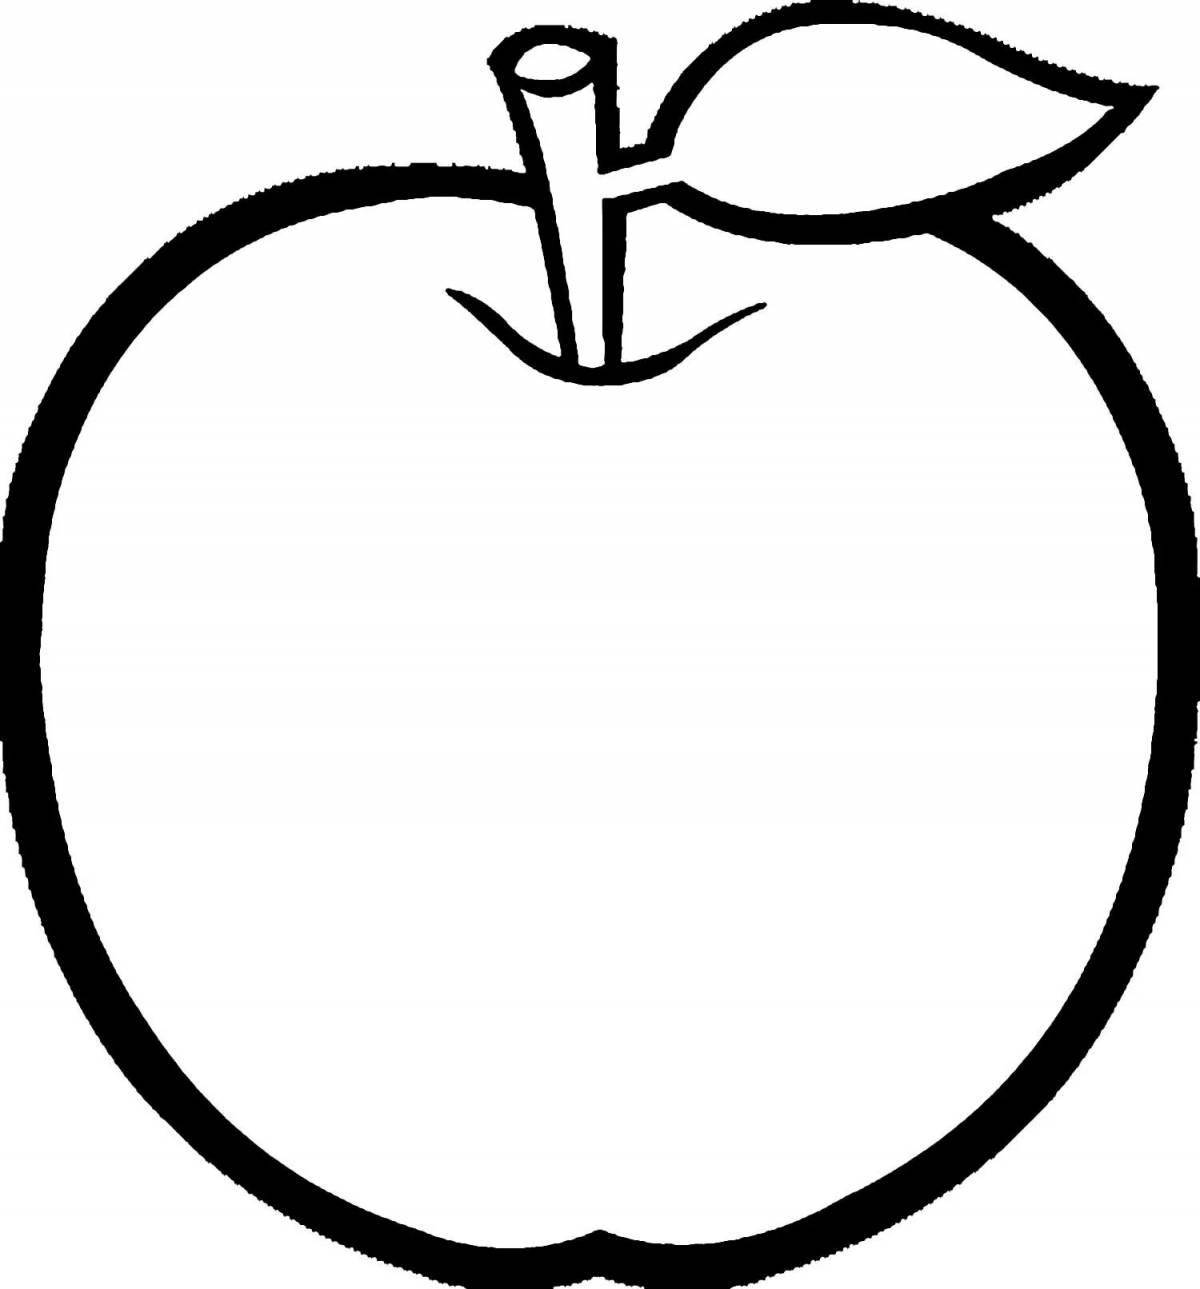 Страница раскраски с замысловатым рисунком яблока